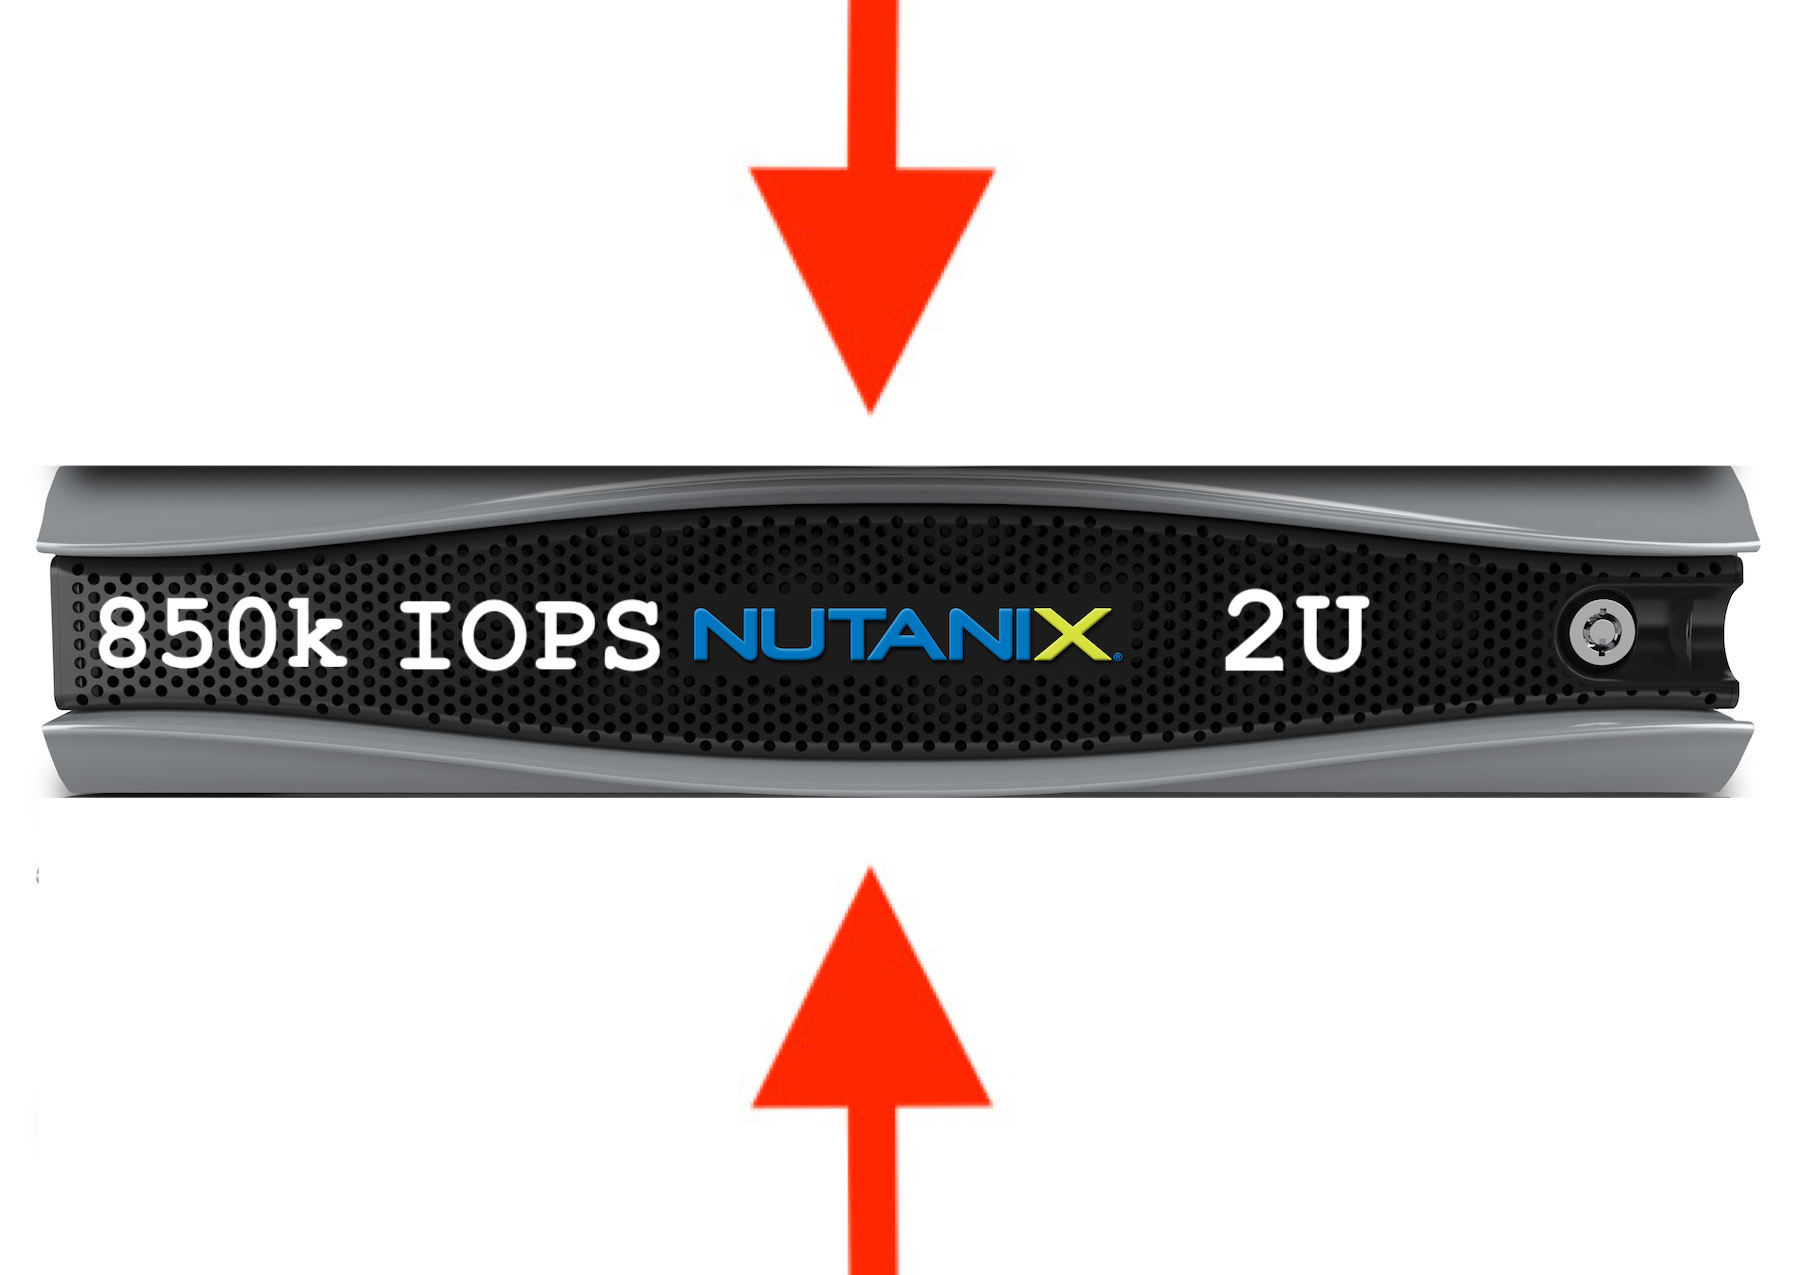 850k IOPS v podání Nutanixu - stačí 2U!